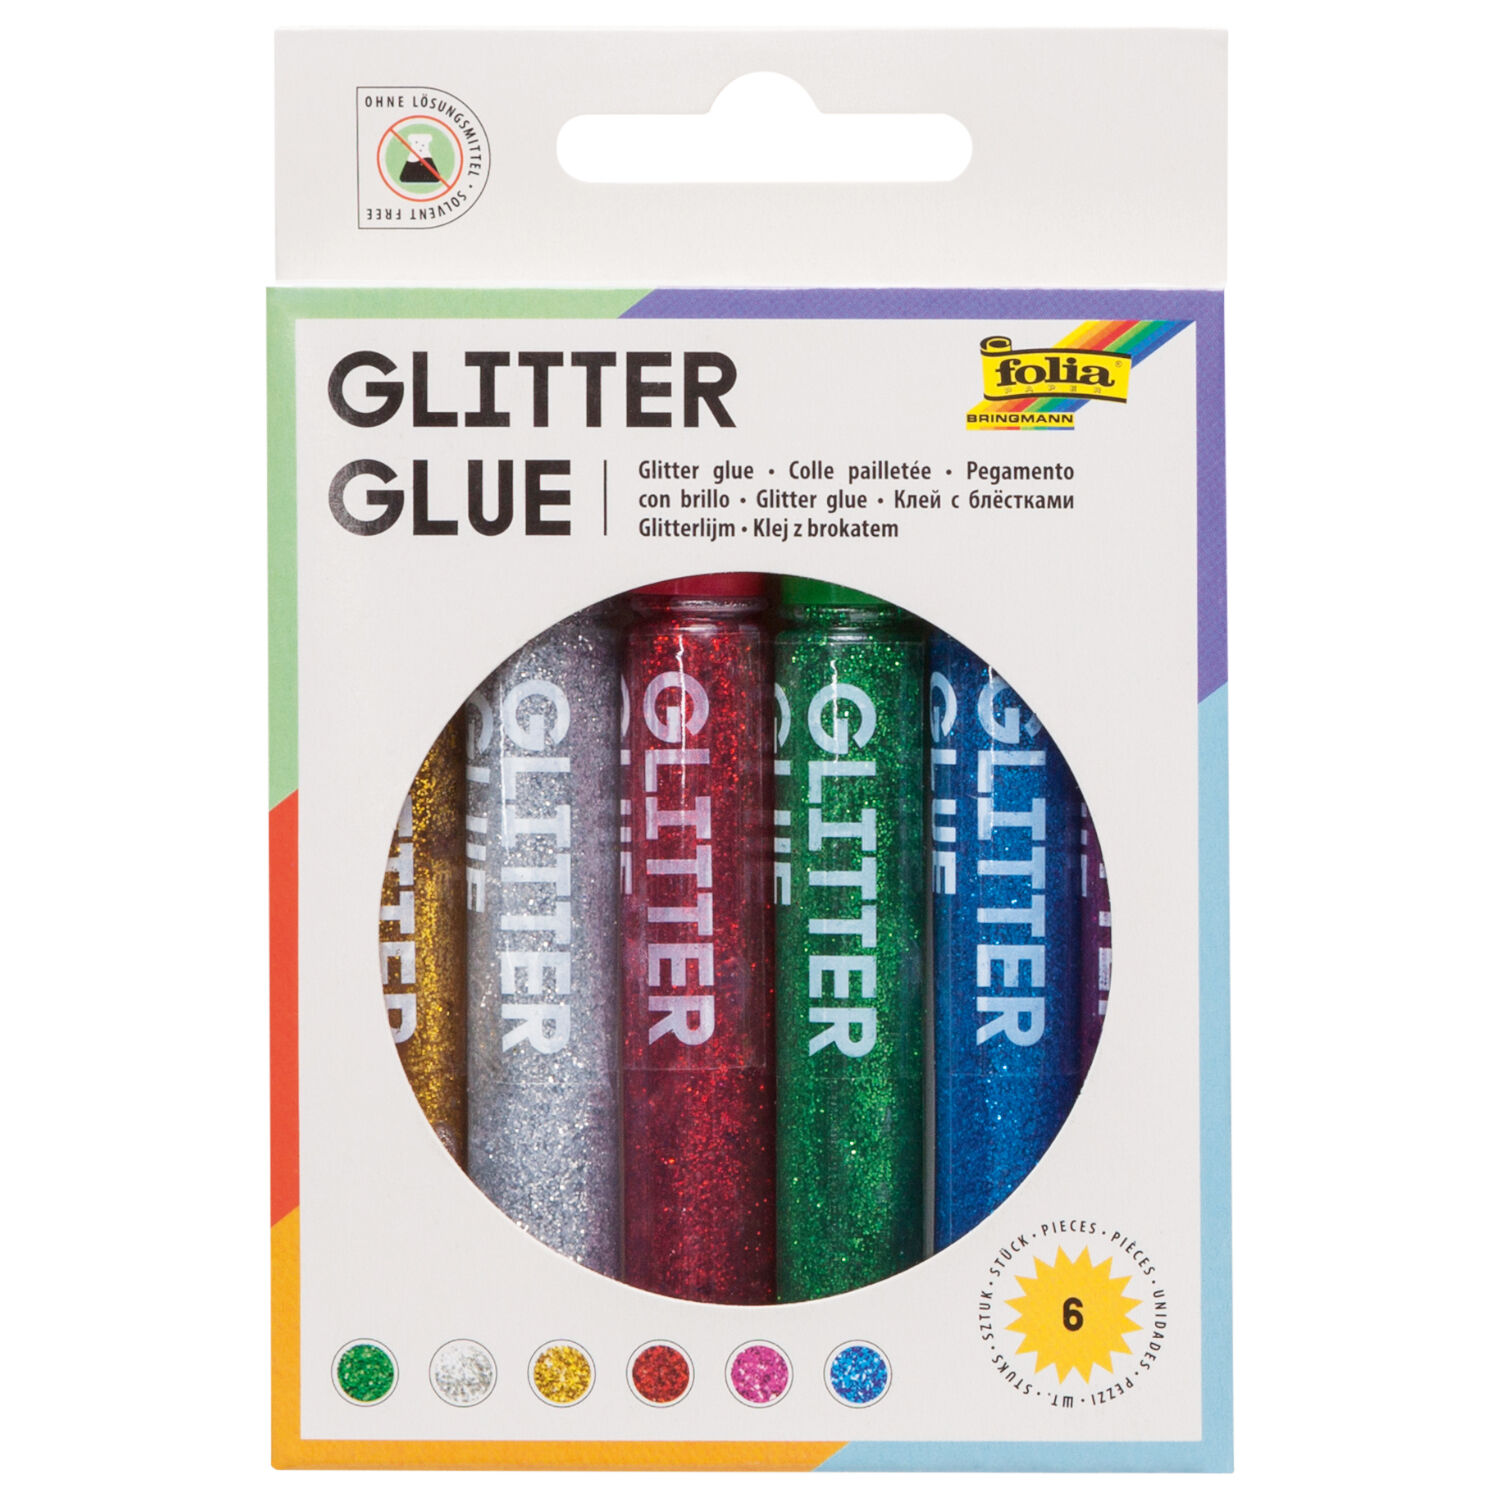 Glitter Glue 6er,6 Klebestifte mit je 9,5ml Inhalt